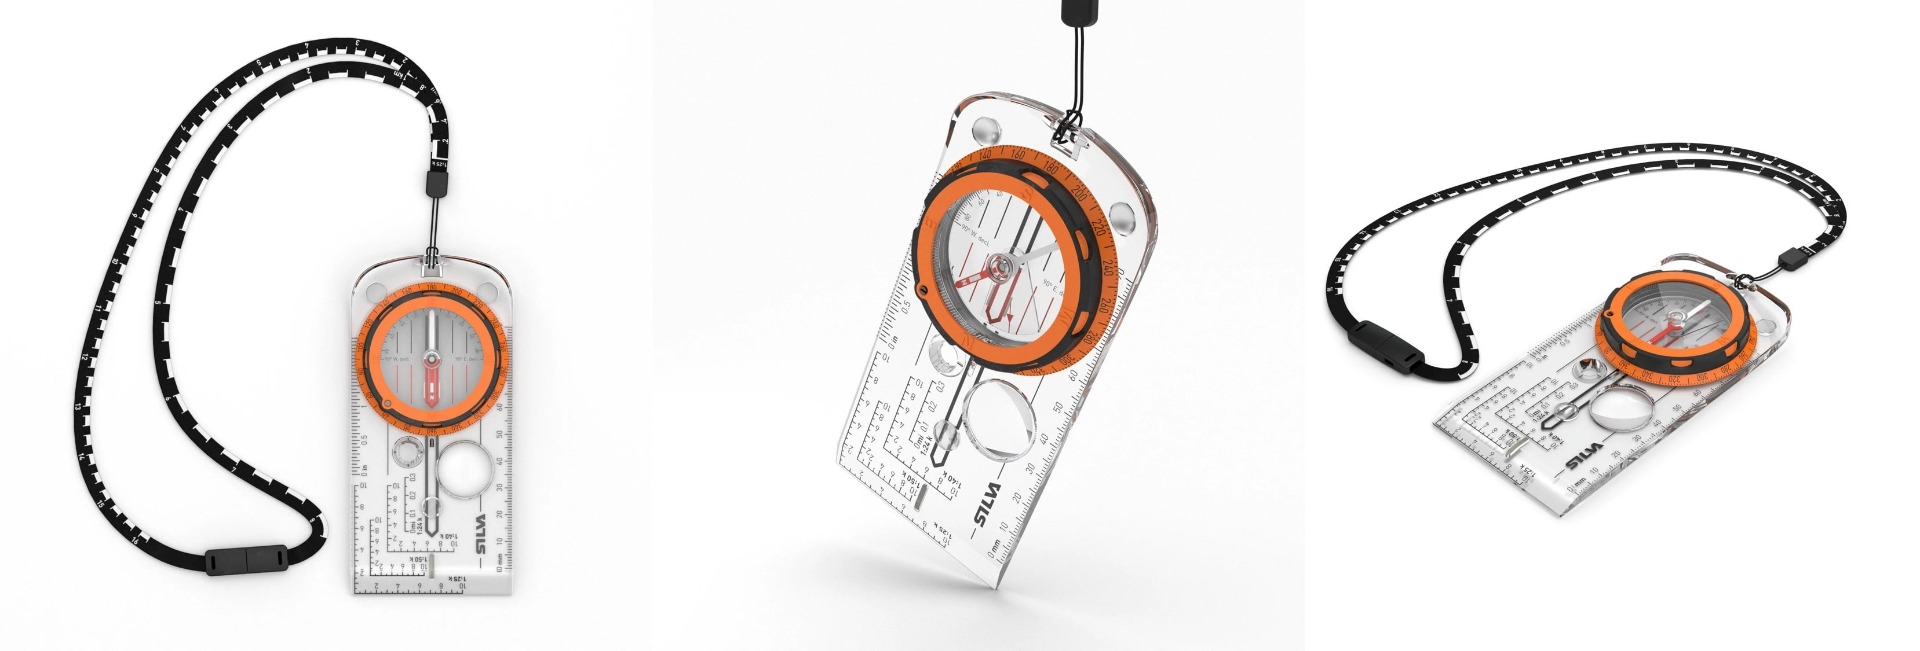 Pridobite natančno in zanesljivo navigacijo na terenu z vrhunskim Silva Expedition S kartnim kompasom. Trpežen, vodoodporen in z naprednimi funkcionalnostmi za pohodnike, orientacijo in popotnike. Kupite ga zdaj!